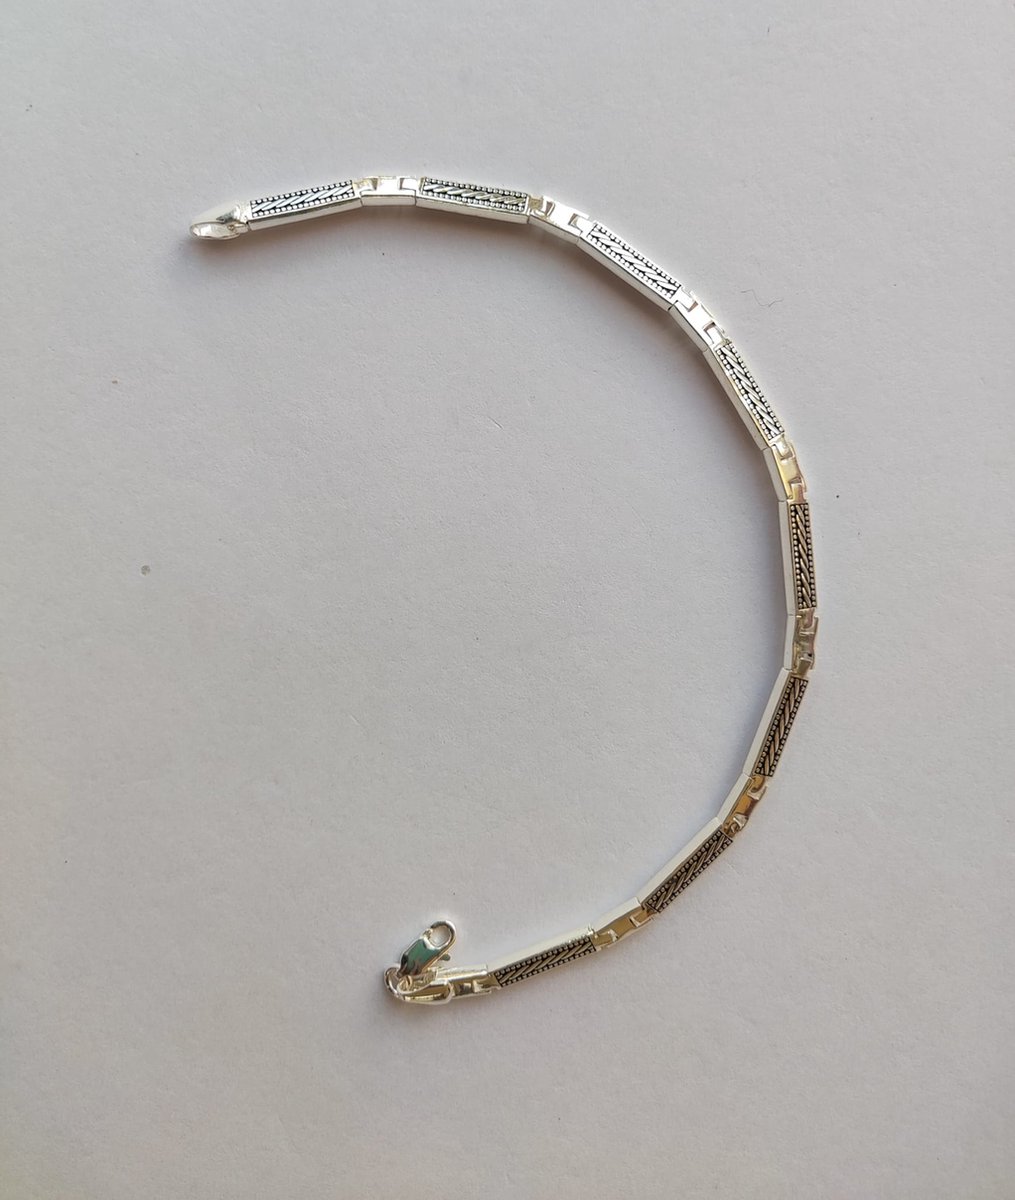 Hare Design Armband 925 Sterling Zilveren Armbanden - Luxe Sieraden - Accessoires - Liefdes Sieraden - Love Armband - Dames en Heren - Armband - Uniseks - Valentijnsdag - Geschenk - Moedersdag - Papadag - Speciale Dagen